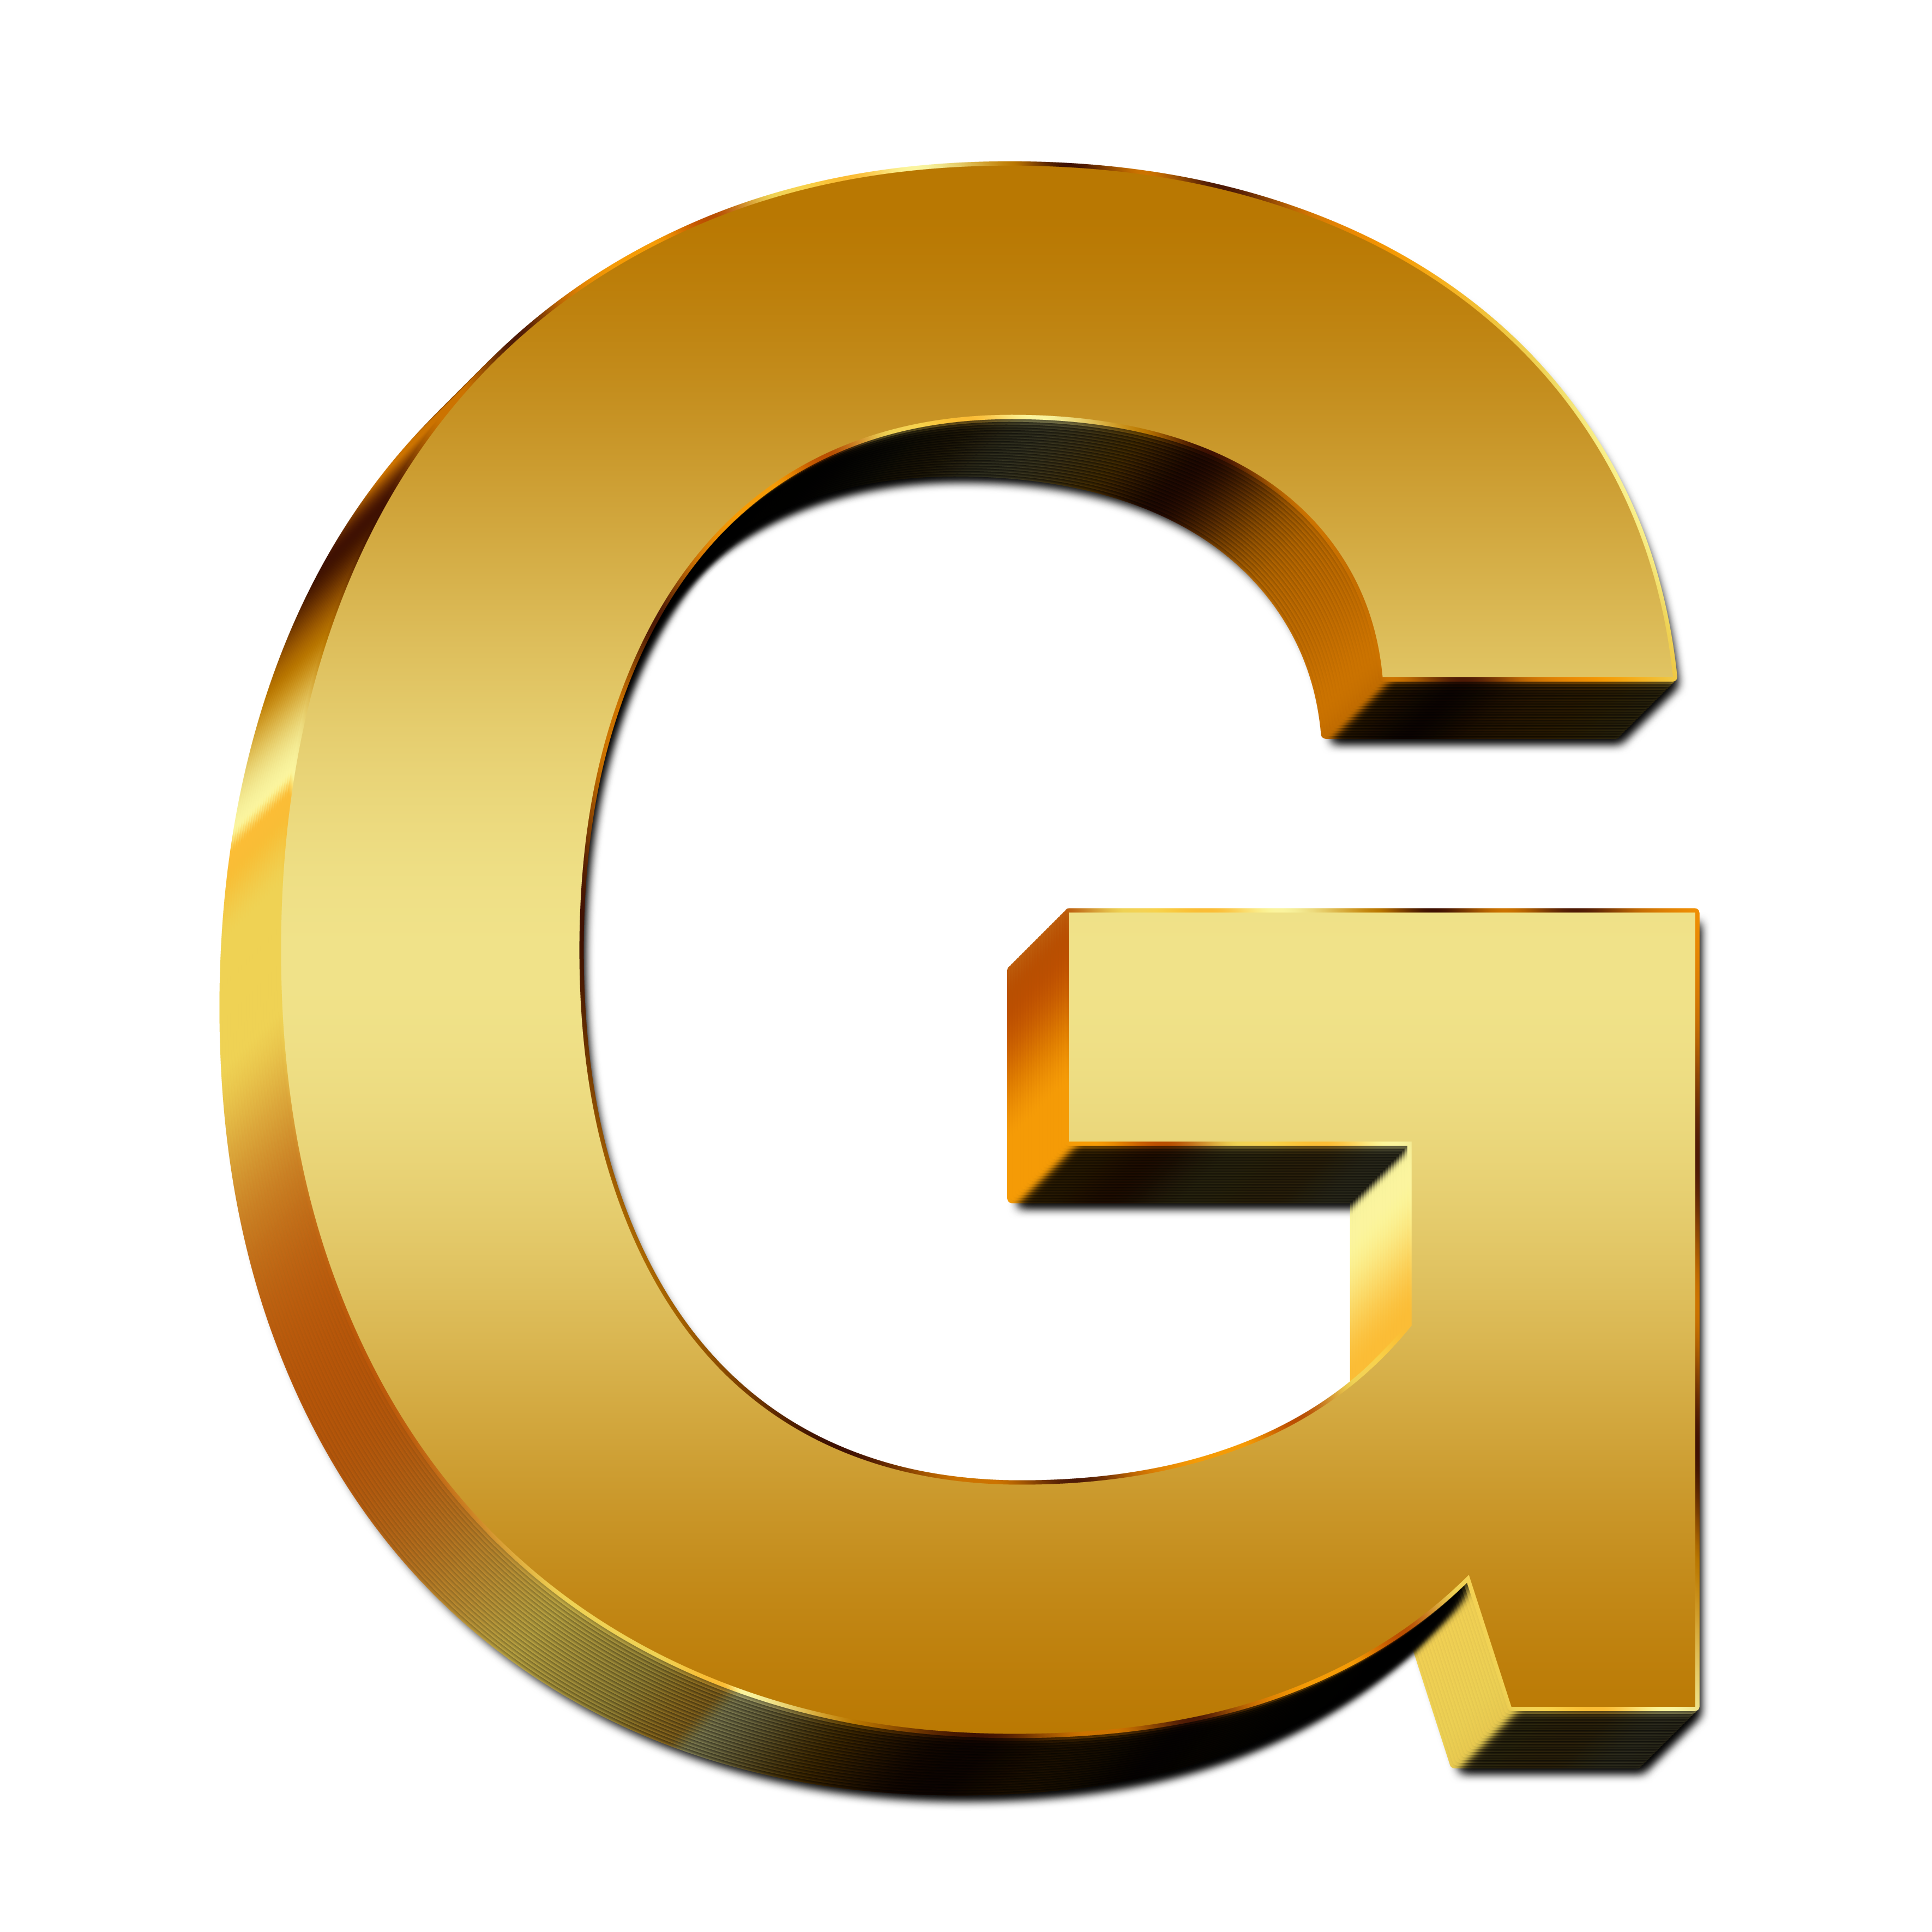 文字G